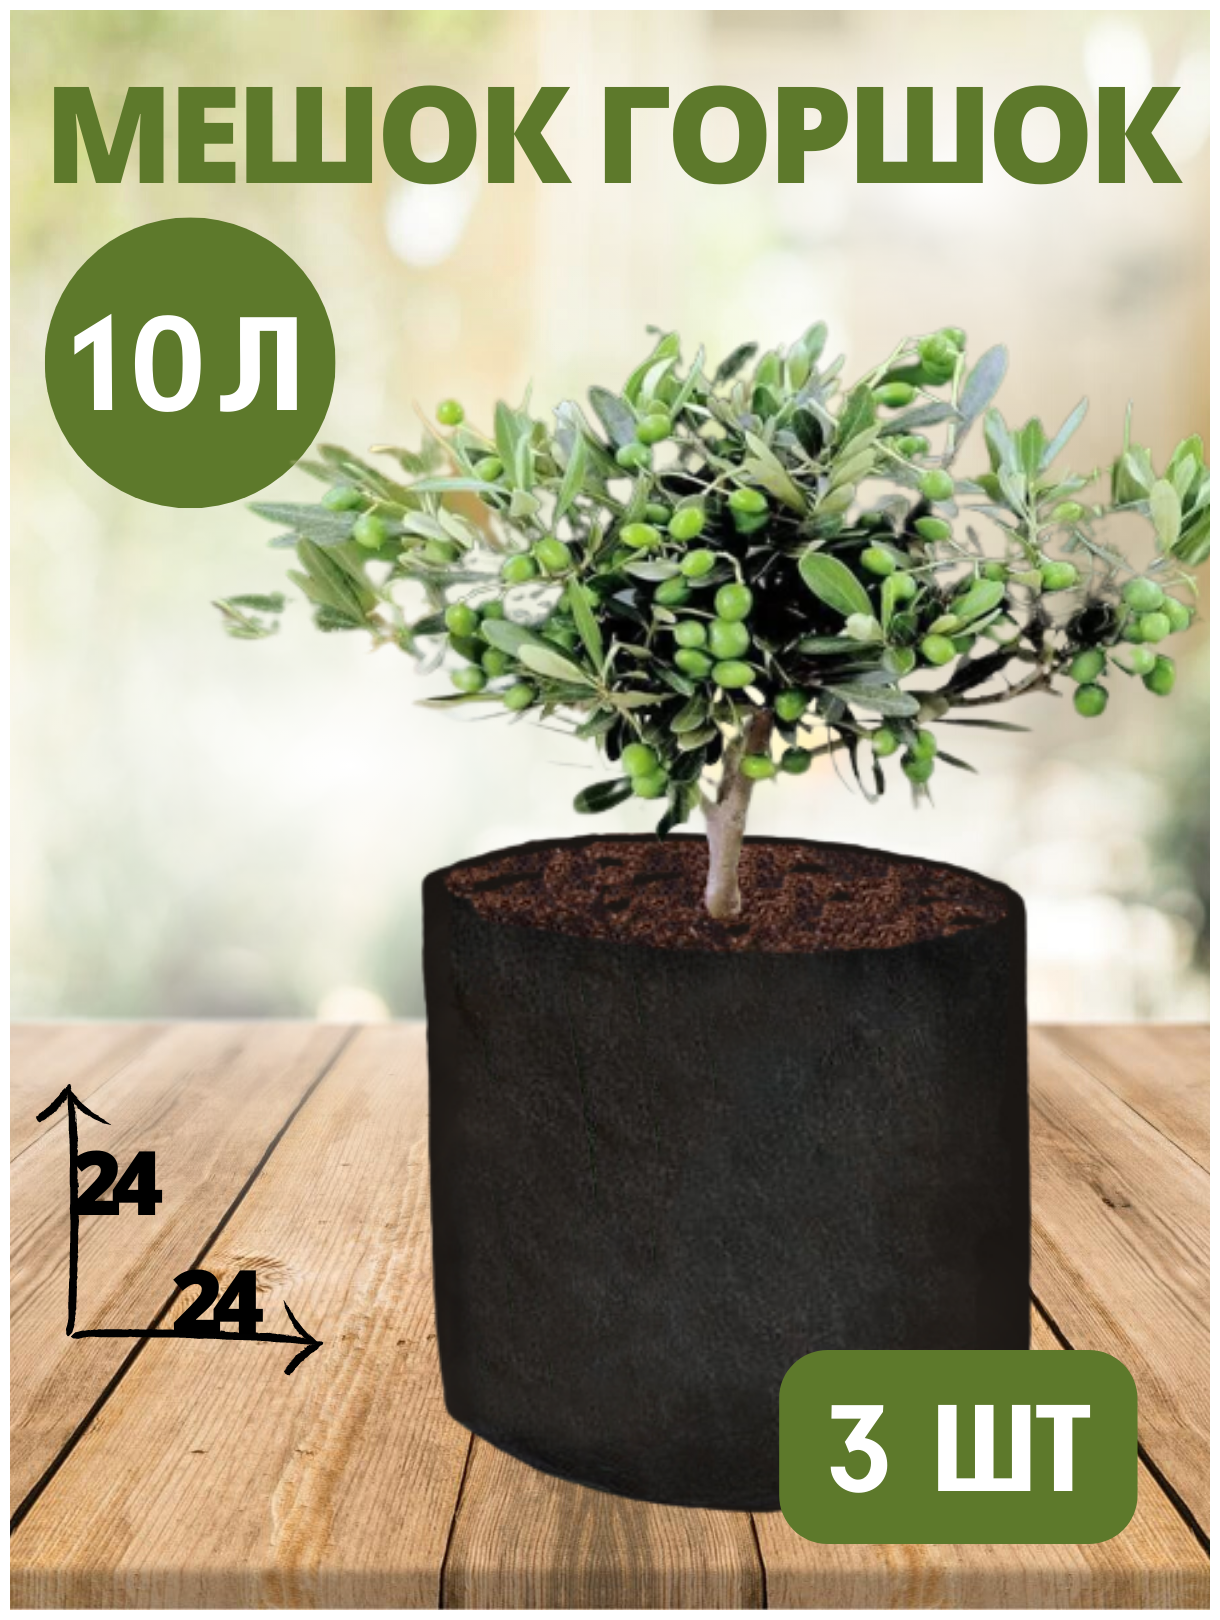 Горшок тканевый (мешок горшок) для растений BagPot - 10 л 3 шт.